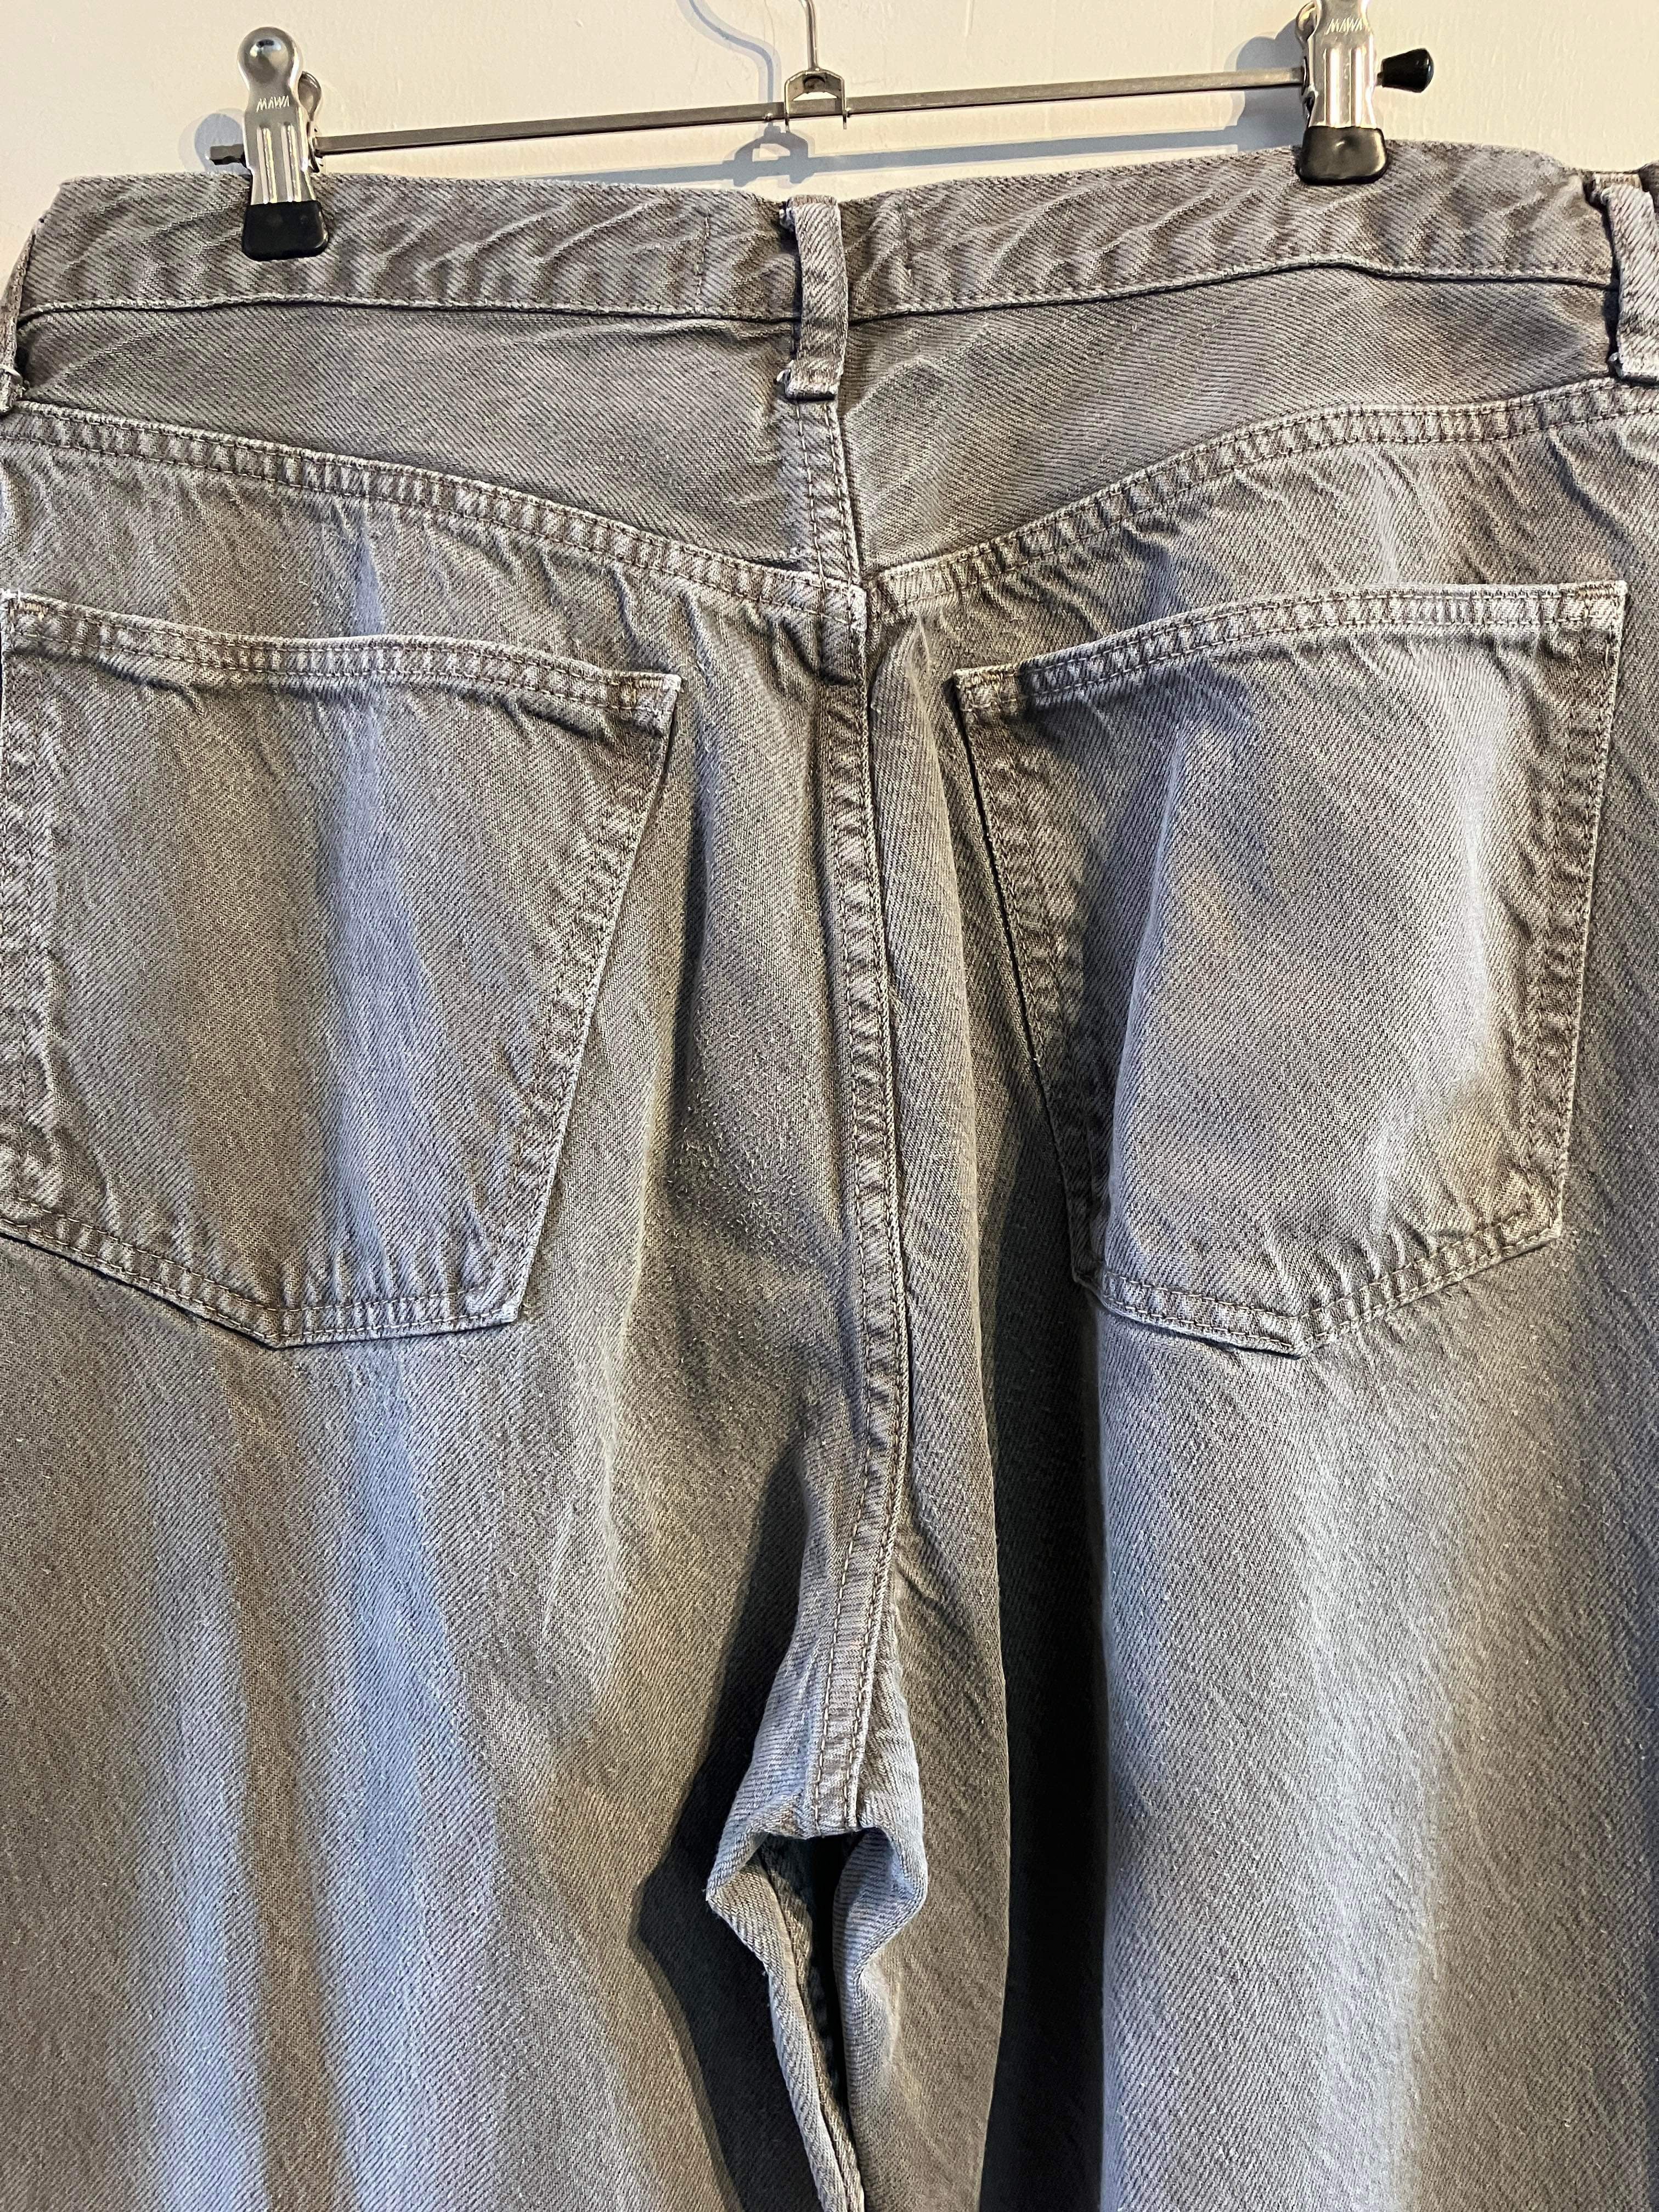 Zara - Jeans - Size: 44